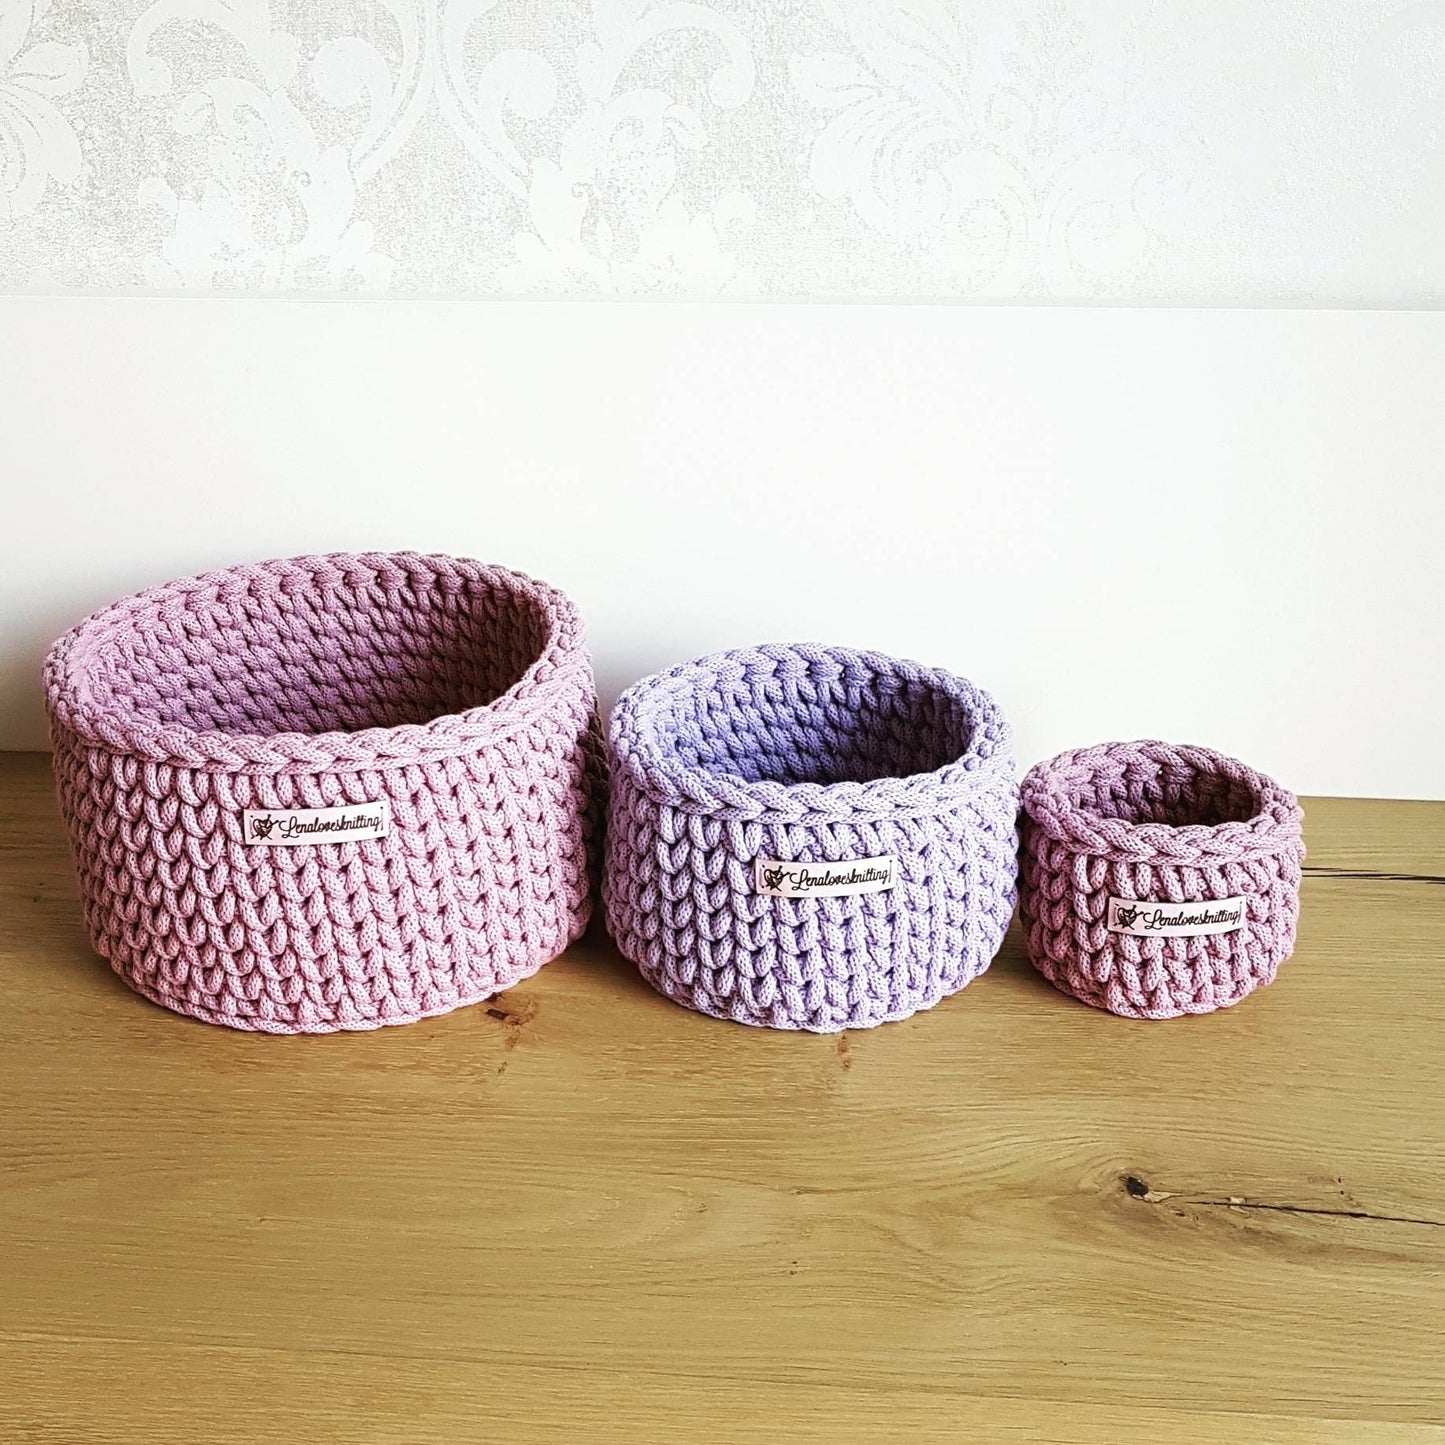 Conjunto de 3 cestas tejidas a ganchillo con cordón de algodón idea de regalo baby shower